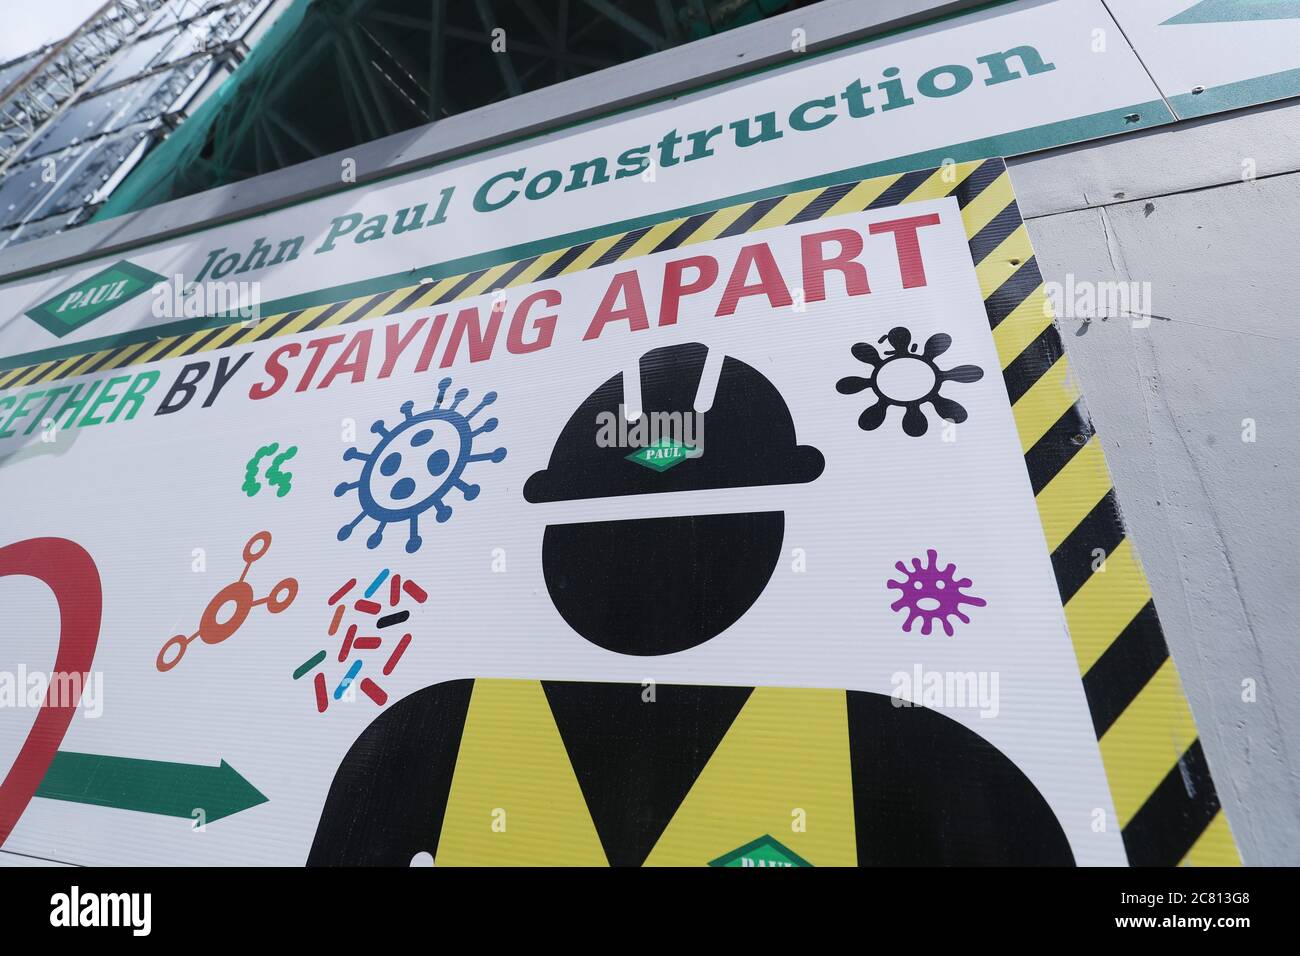 Un signe de distanciation sociale au chantier de construction de John Paul sur la rue Dublins Townsend qui a dû fermer temporairement après un certain nombre de membres du personnel ont été testés positifs pour Covid-19. Banque D'Images